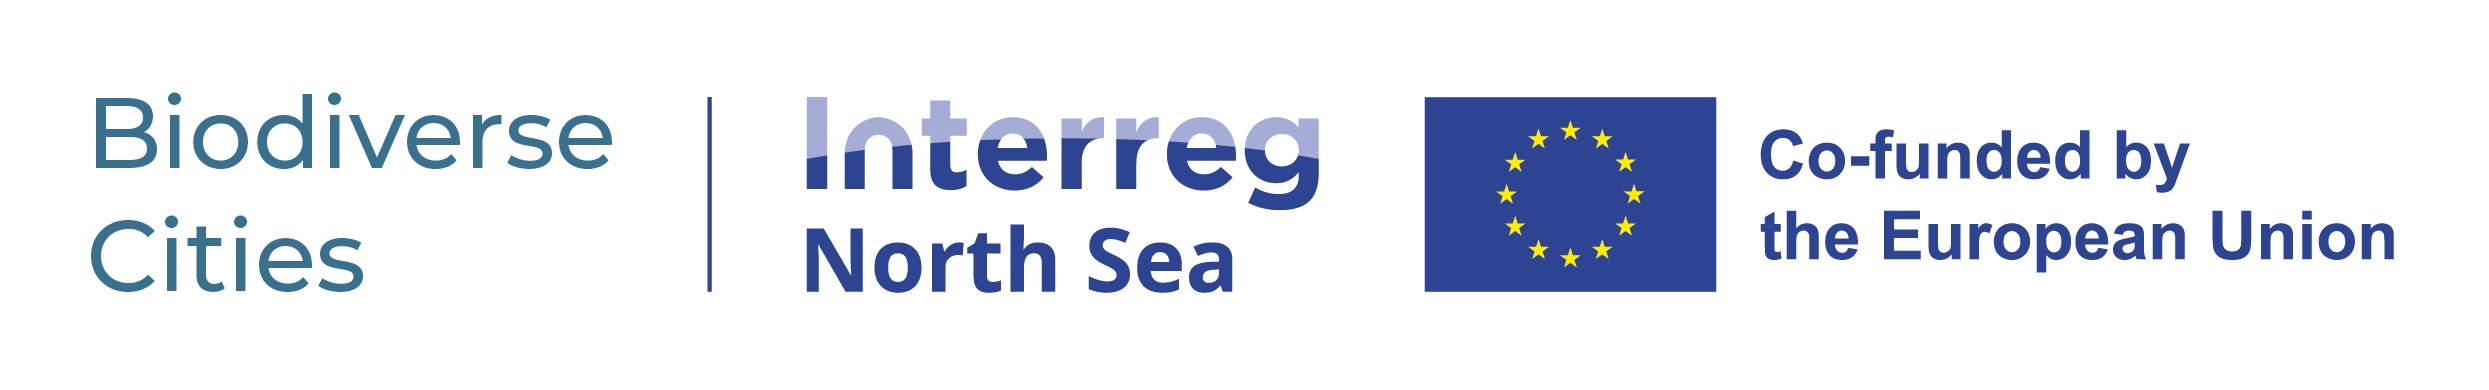 Biodiverse Cities Interreg North Sea logo